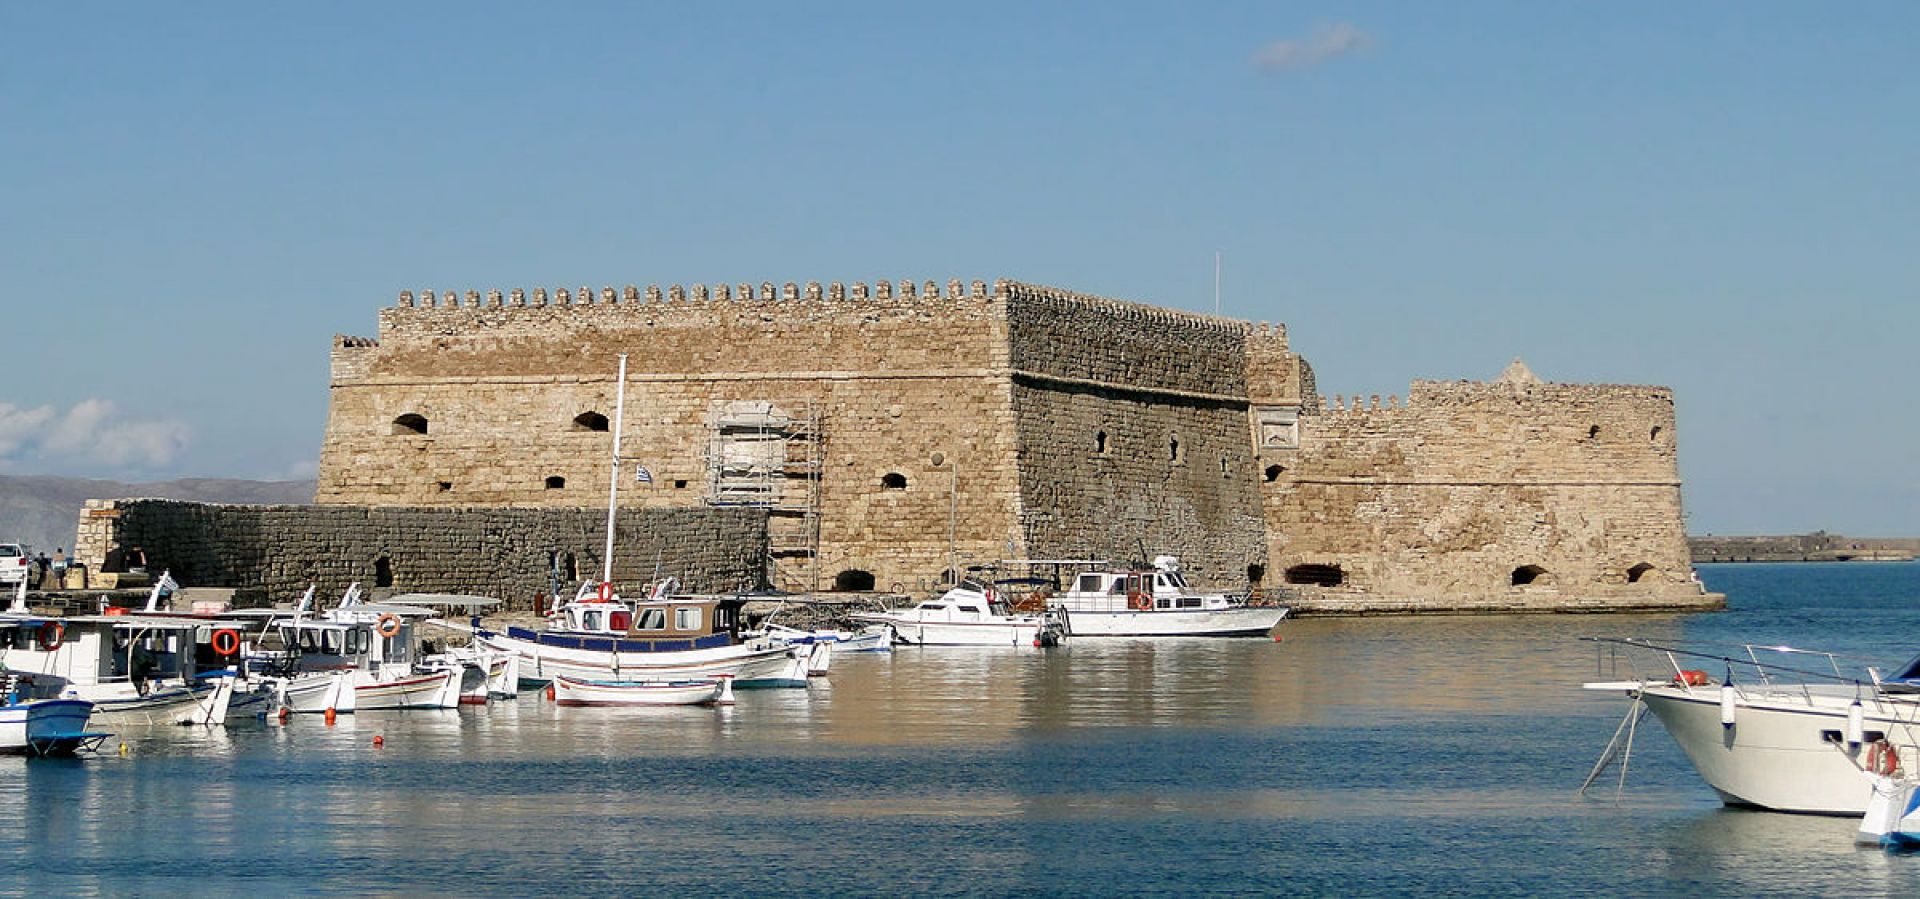 Venetian fortress Koule